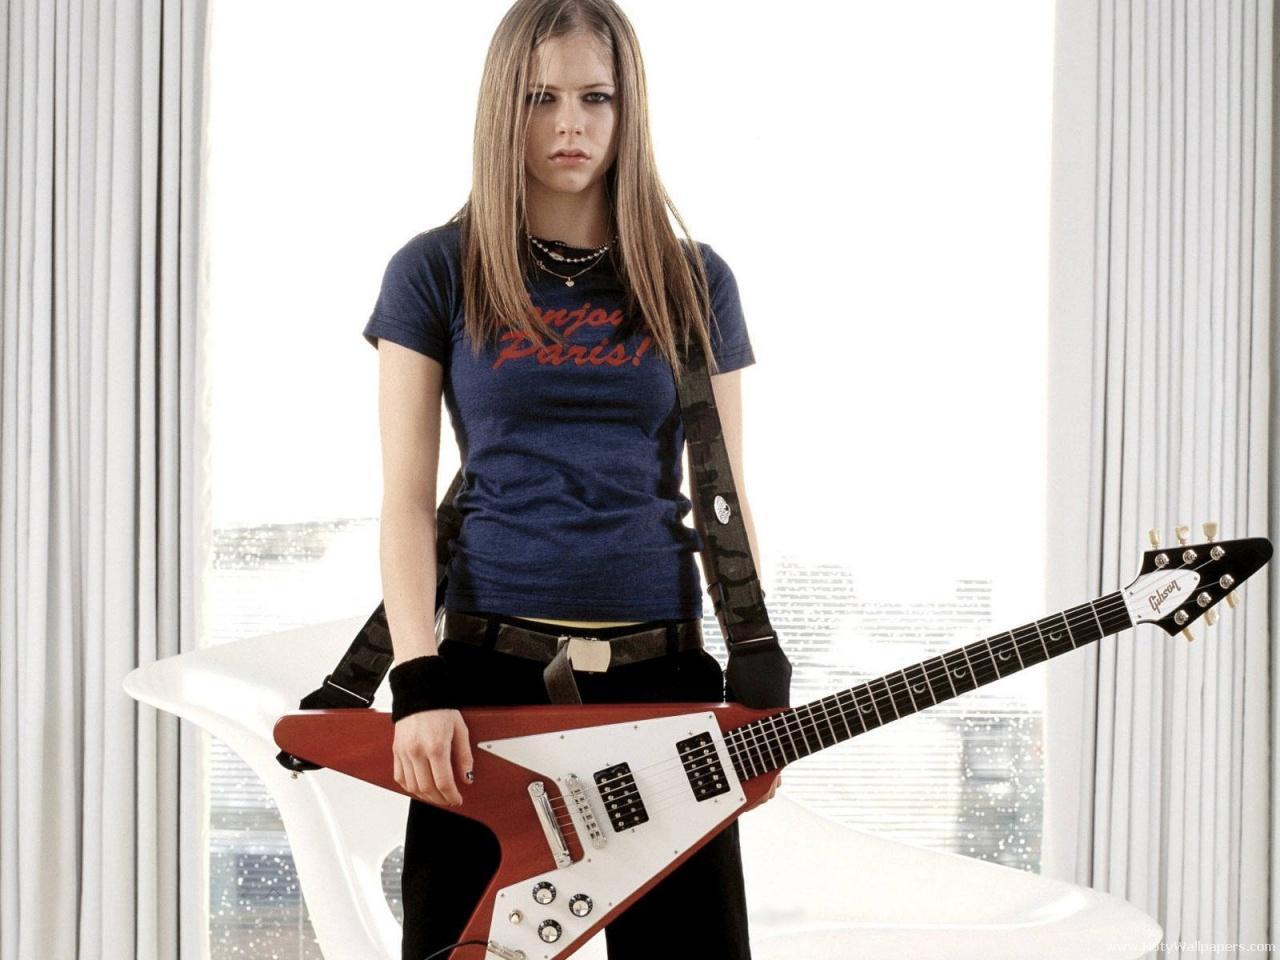 http://2.bp.blogspot.com/-SATGZVFITEU/Tjq-2C6NtWI/AAAAAAAAIow/-rAxw39jo3Q/s1600/Avril_Lavigne_with_guitar.jpg